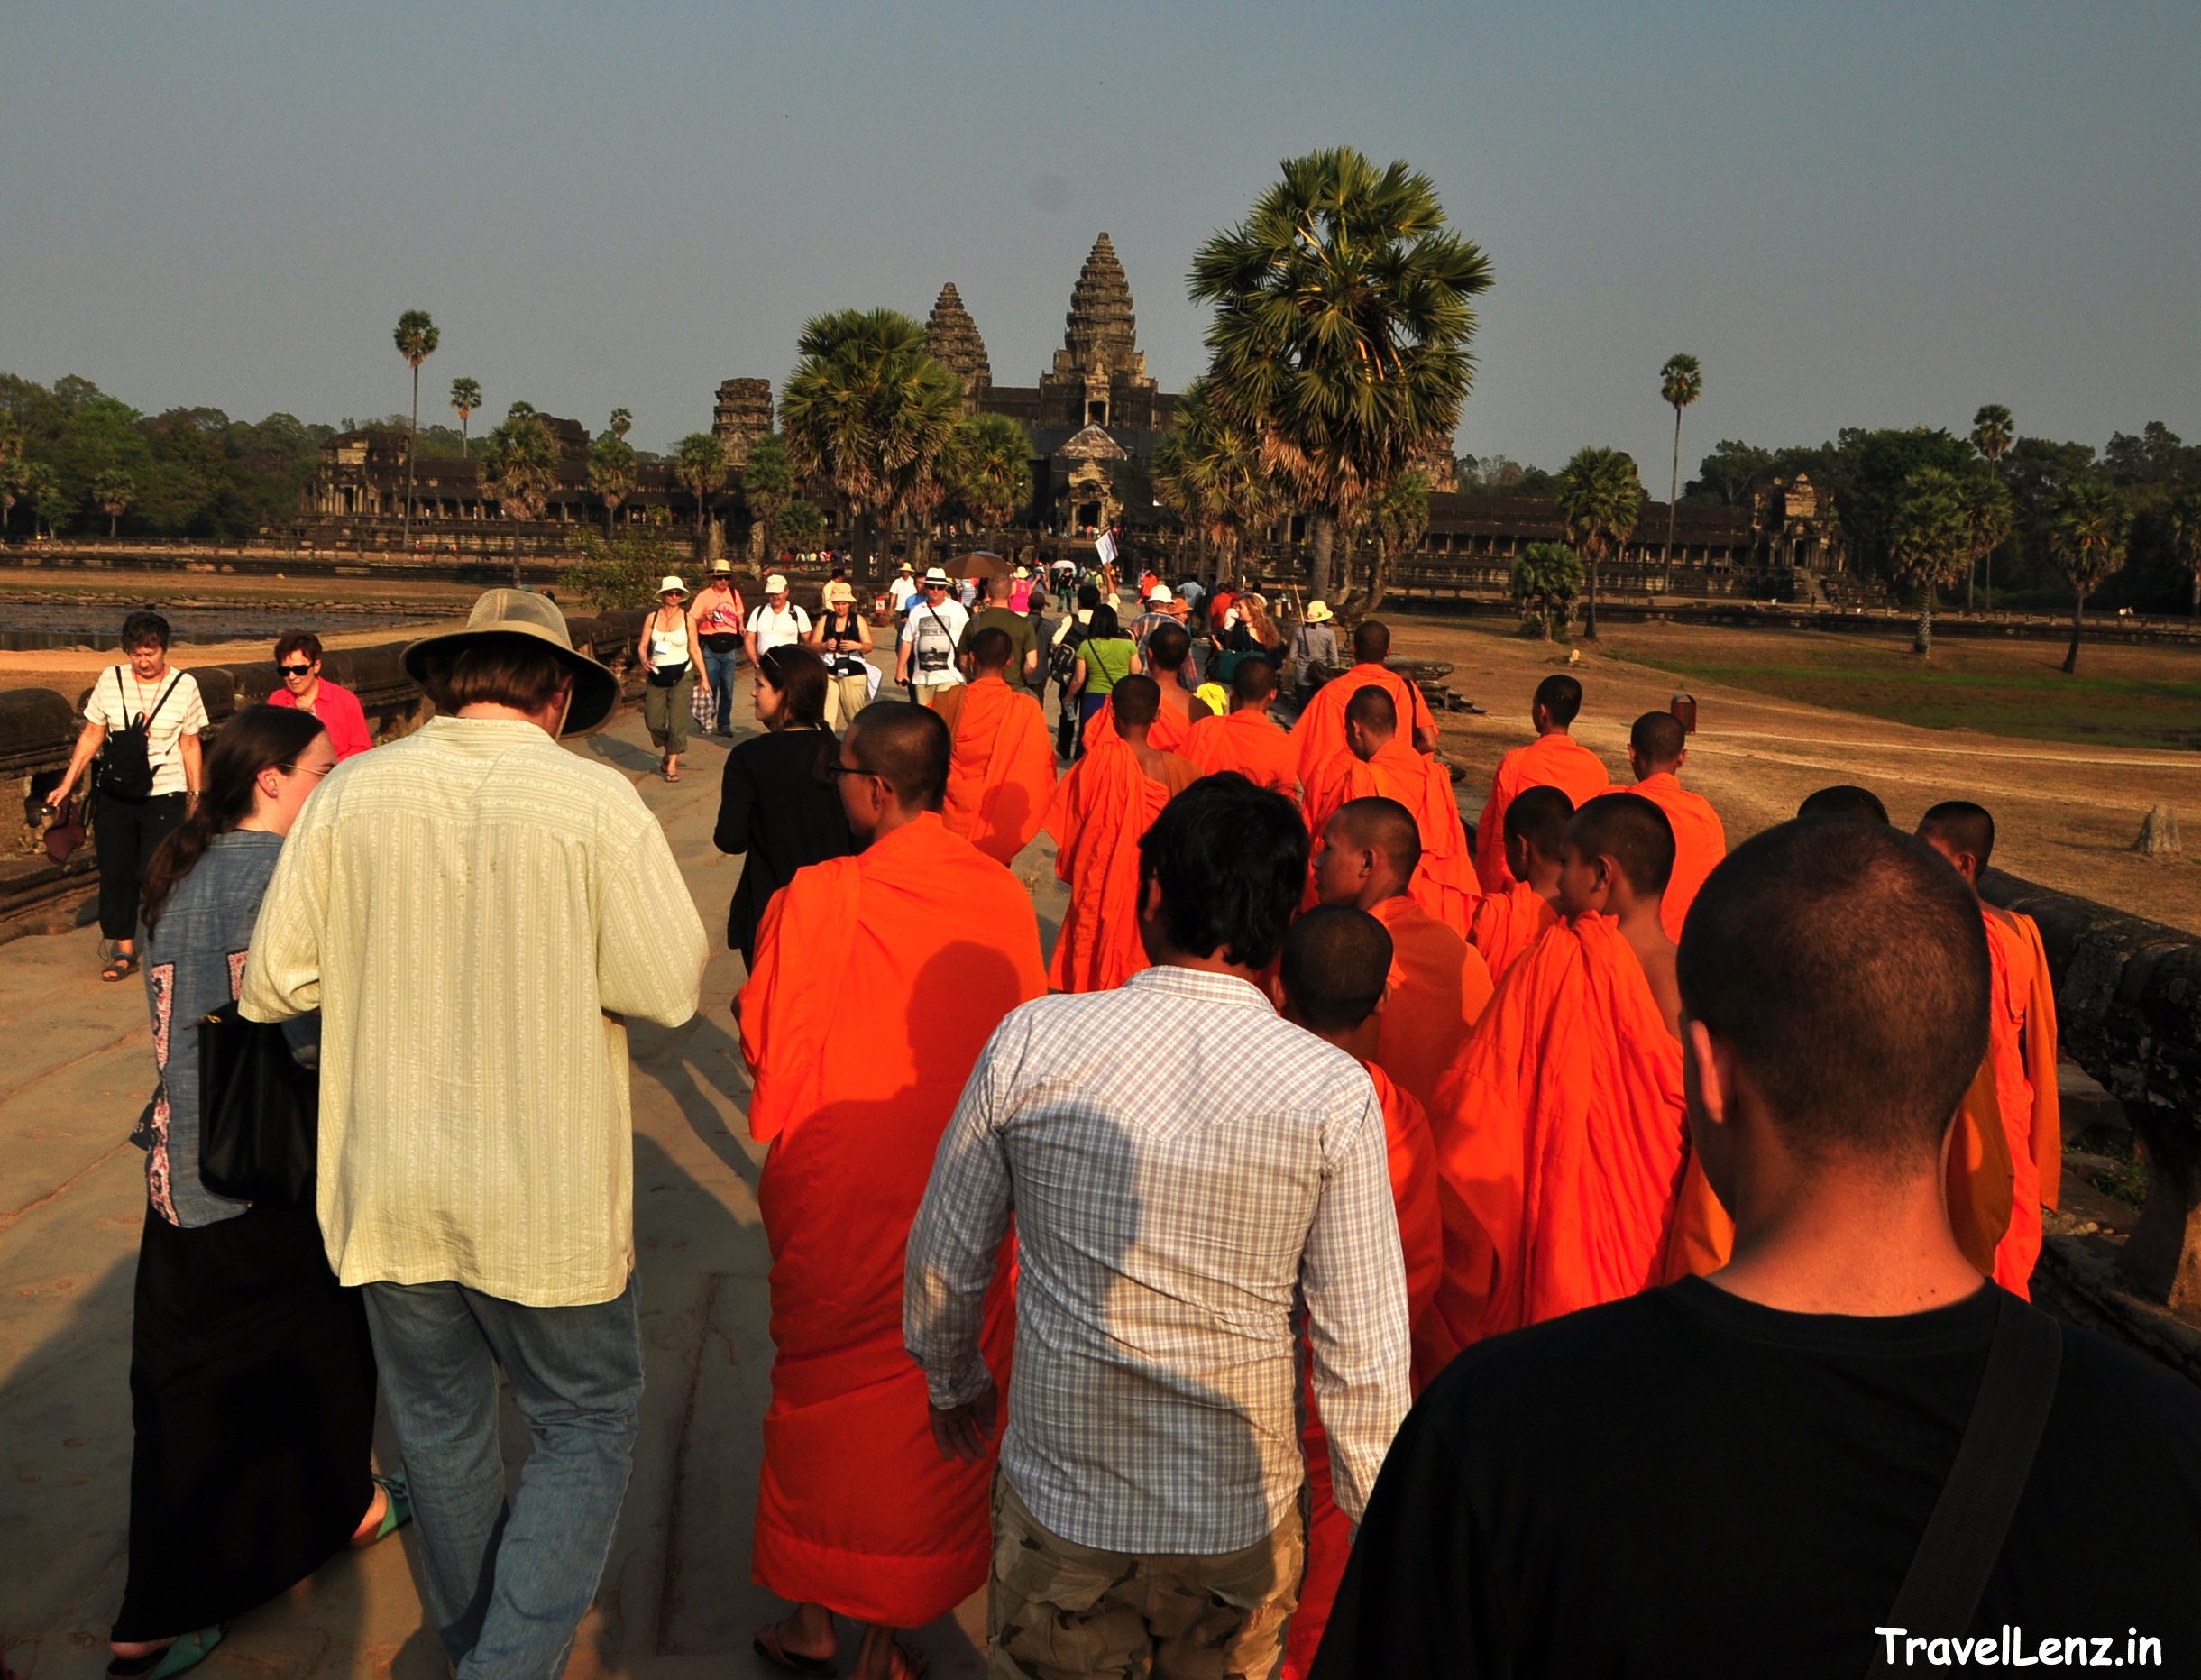 Visitors at Angkor Wat